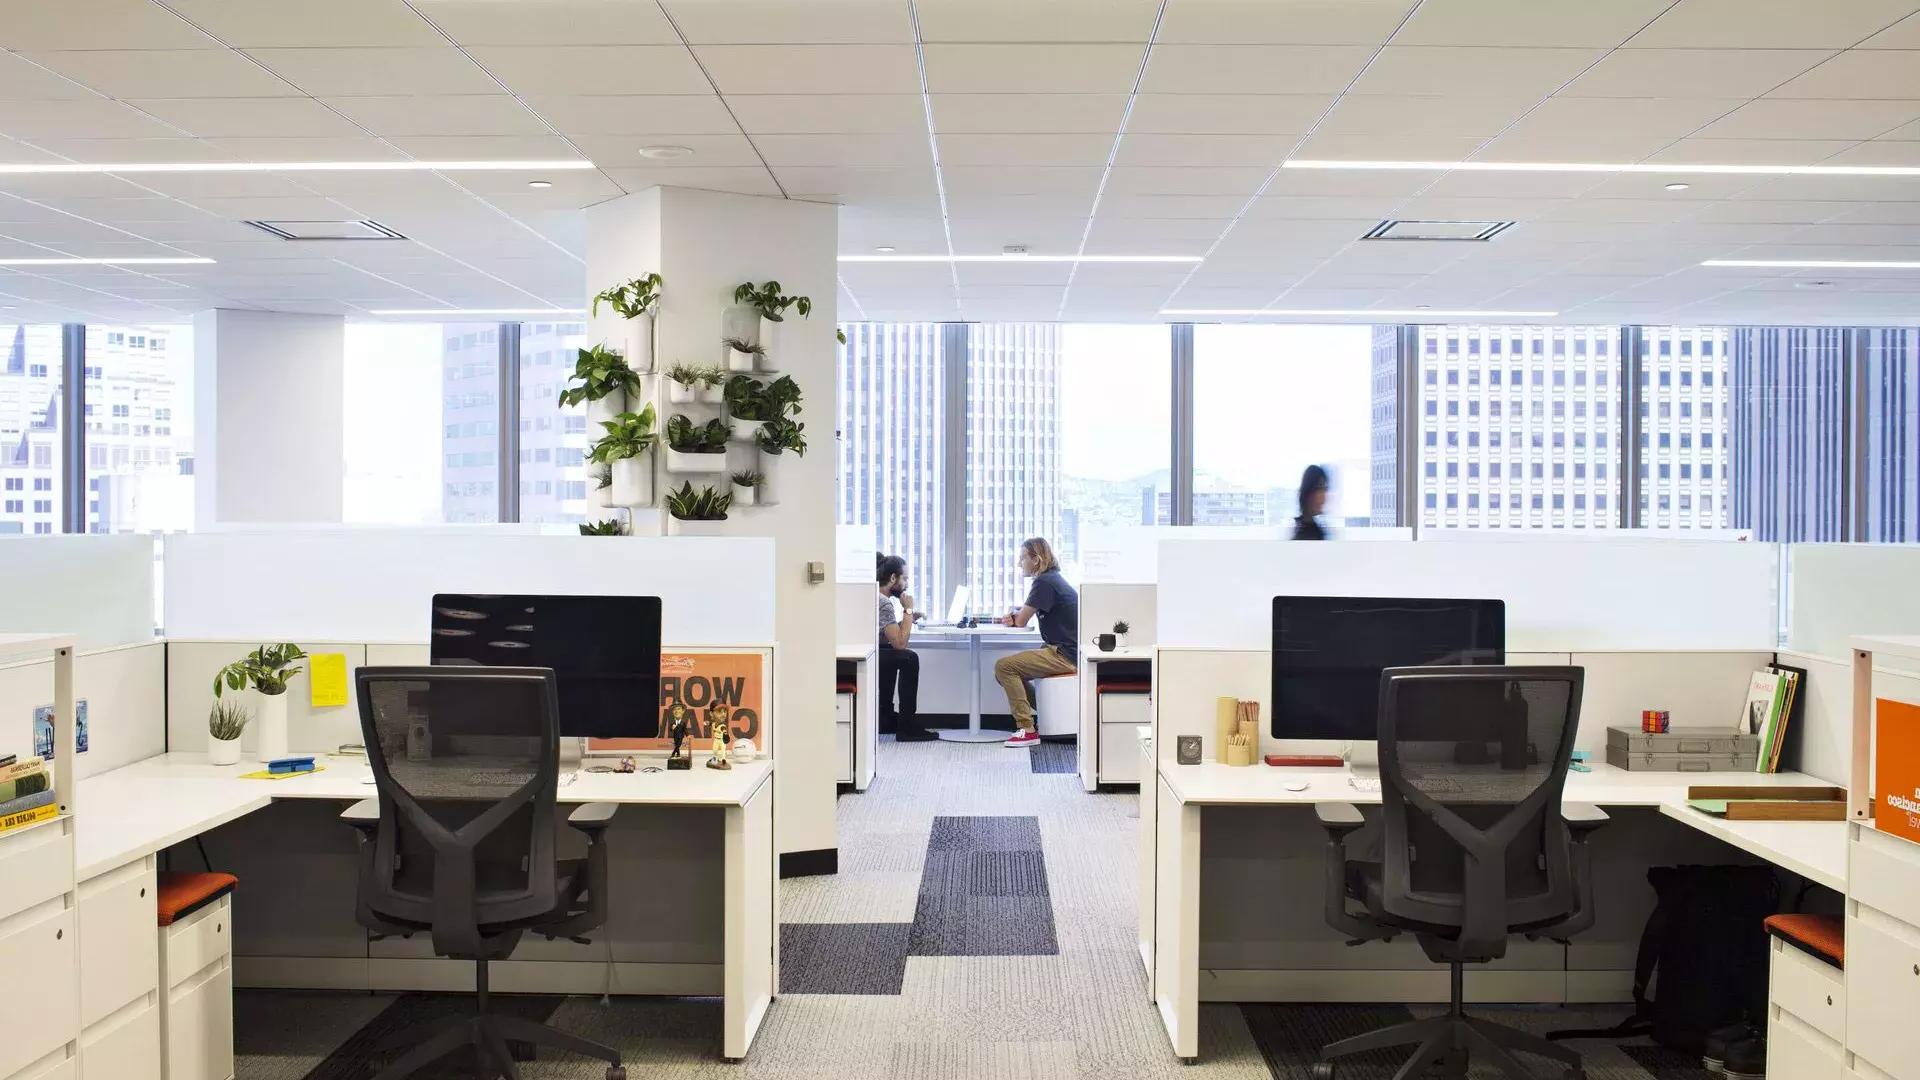 Scena interna in un edificio per uffici a San Francisco, con scrivanie in primo piano e due persone che lavorano a un tavolo davanti a grandi finestre.